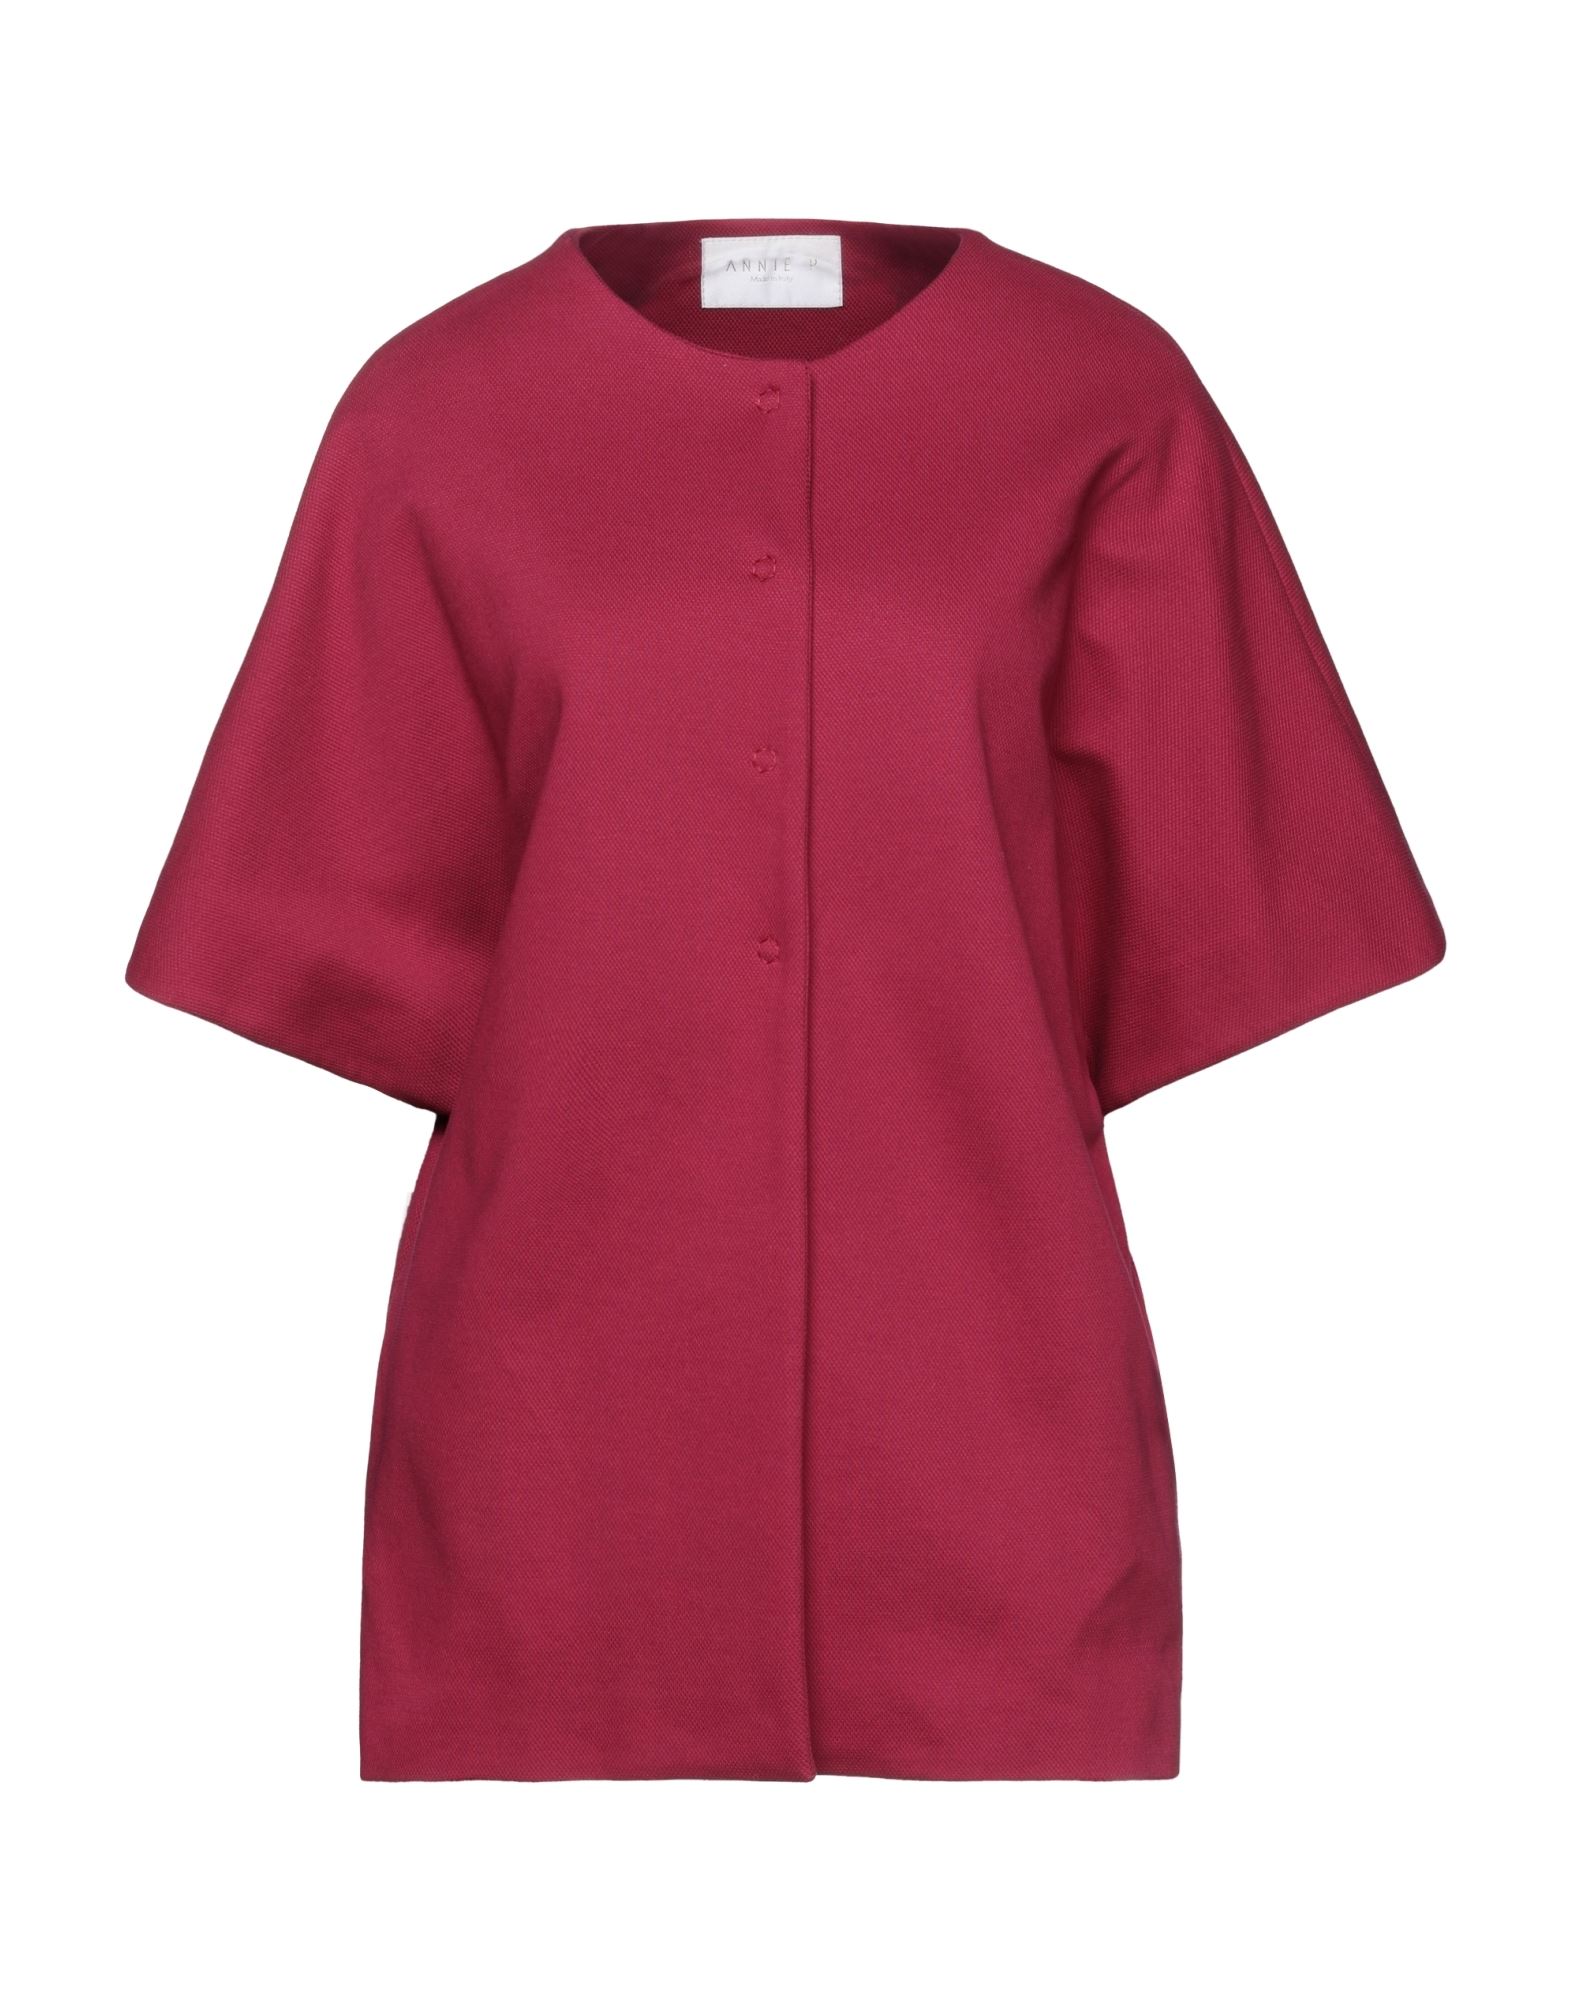 Annie P . Woman Overcoat Garnet Size 8 Cotton, Elastane In Red